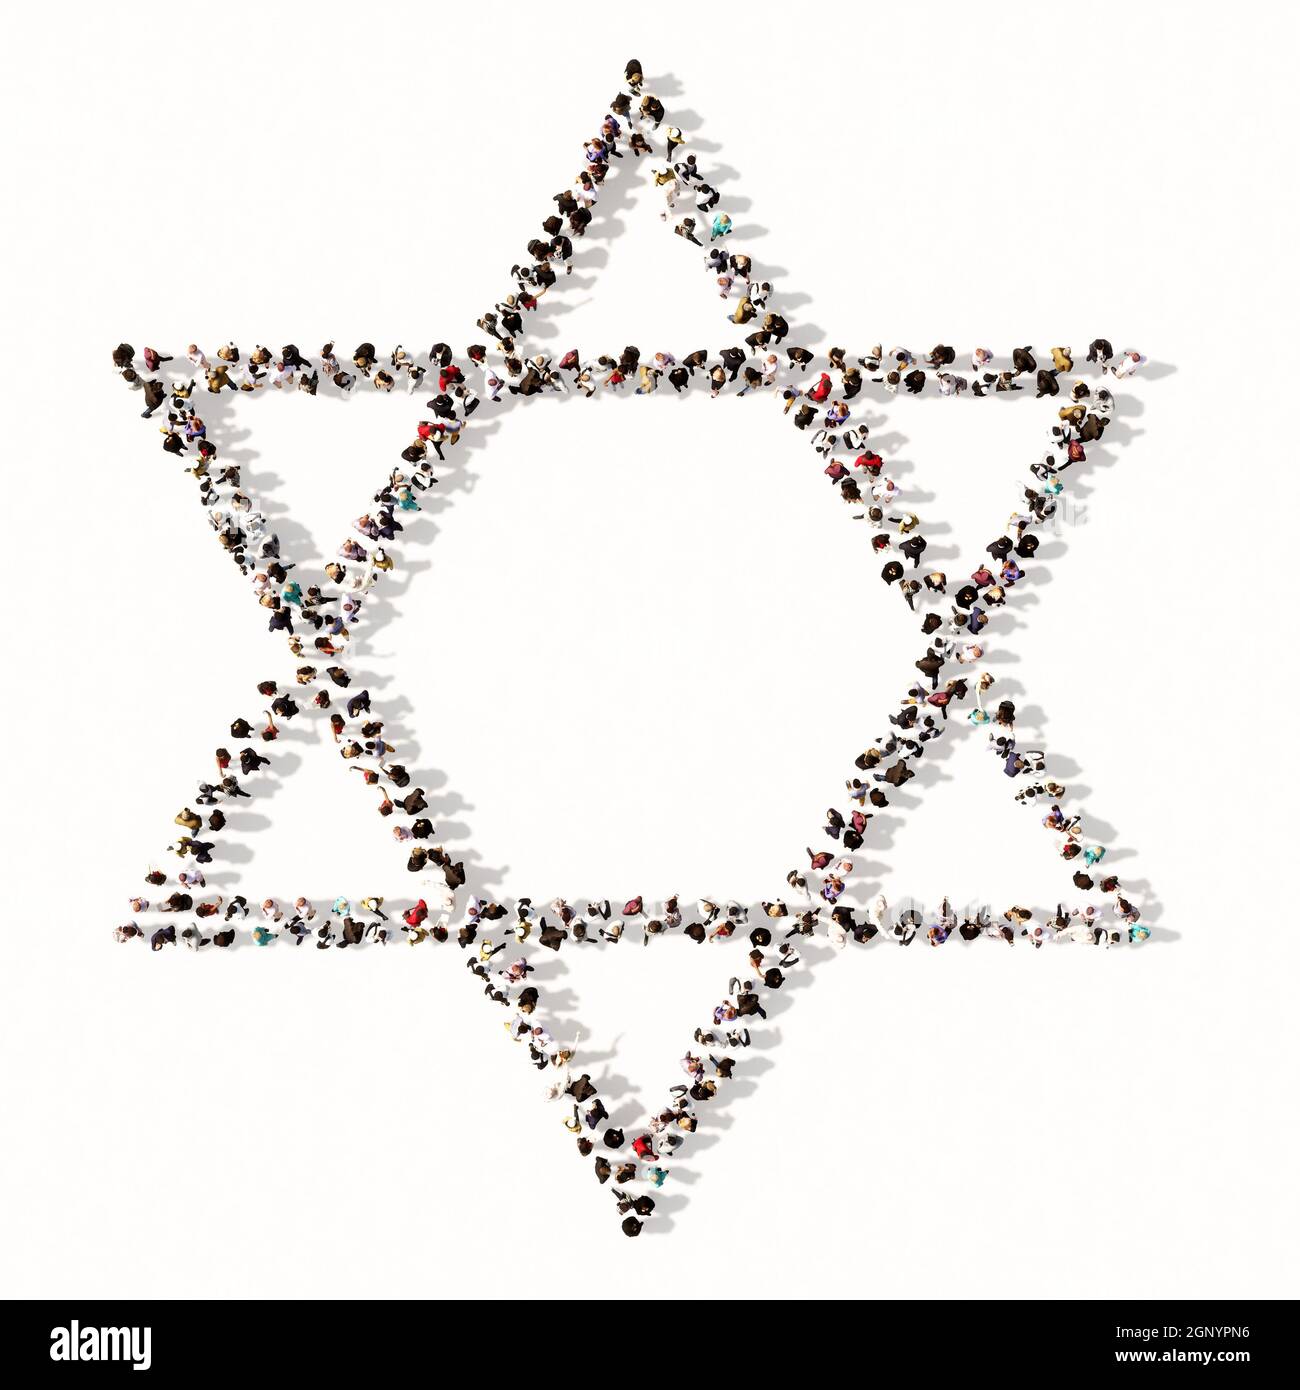 Konzept oder konzeptuelle große Sammlung von Menschen bilden das Bild des religiösen hebräischen Stern von David. Eine 3d-Illustration Metapher für das Judentum Stockfoto